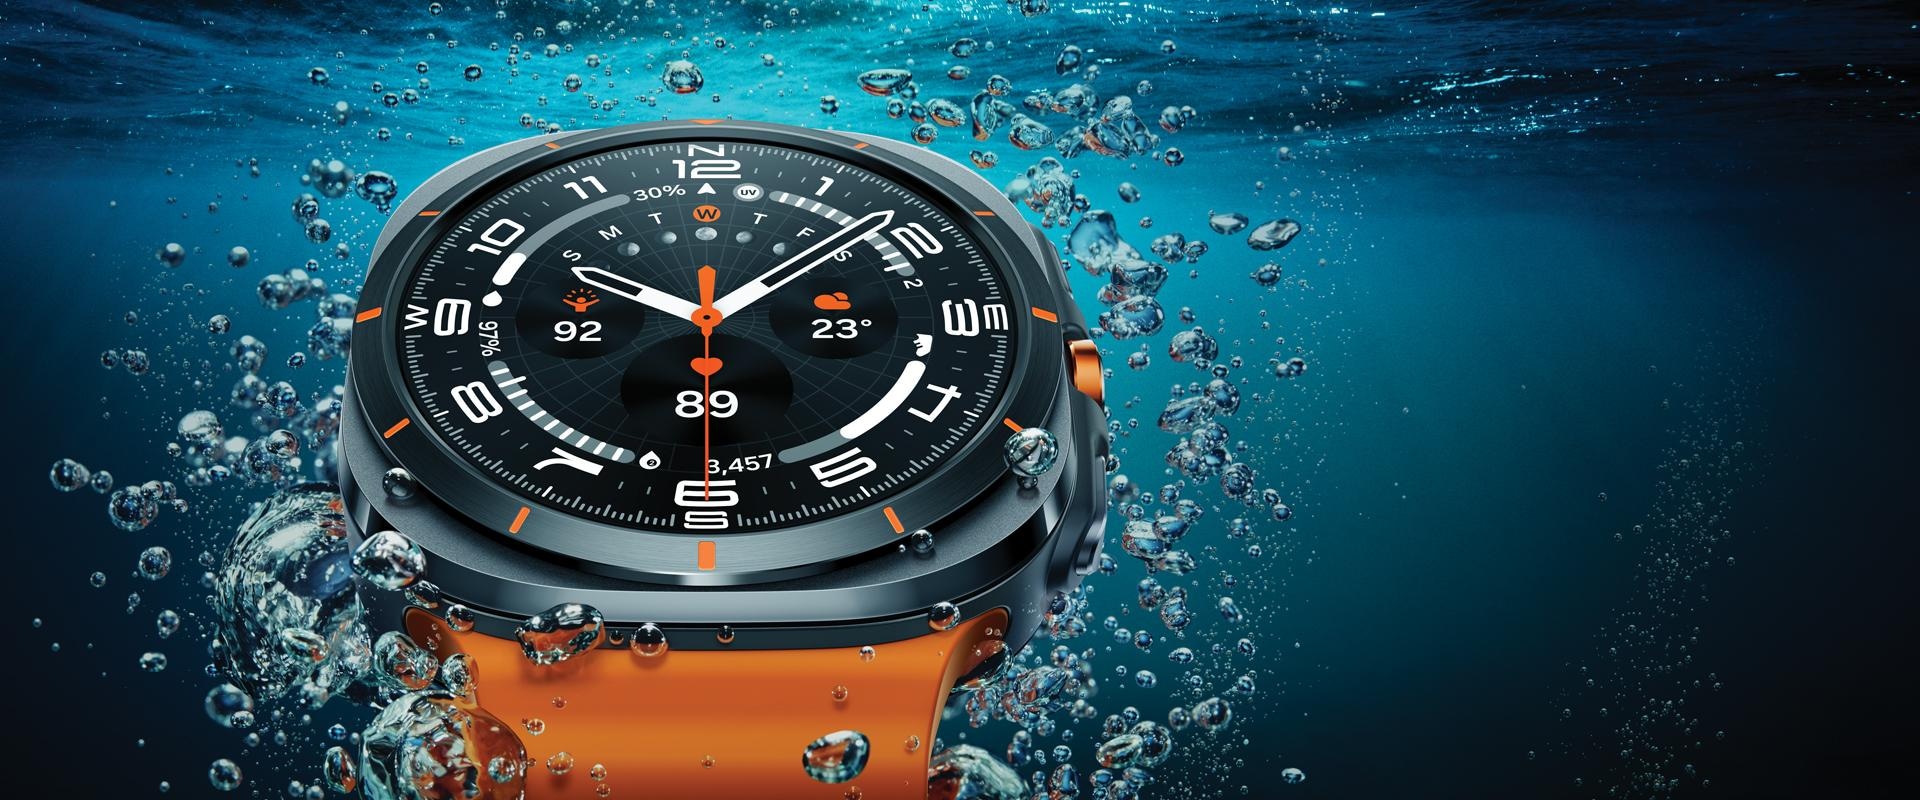 Un Galaxy Watch Ultra in primo piano sulla superficie dell’acqua per evidenziarne il design.